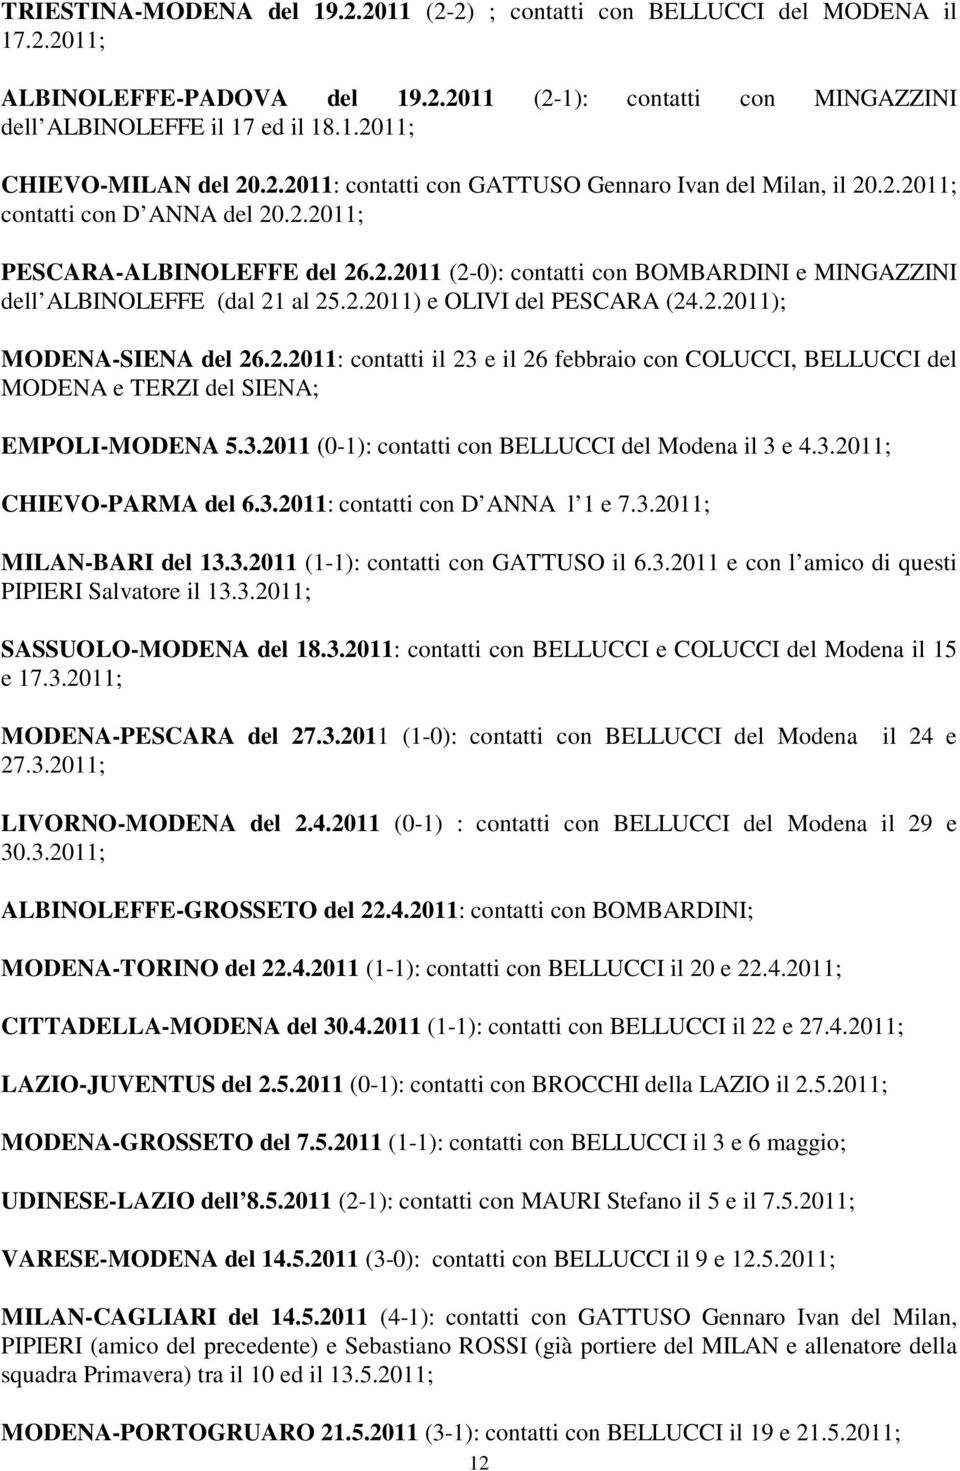 2.2011) e OLIVI del PESCARA (24.2.2011); MODENA-SIENA del 26.2.2011: contatti il 23 e il 26 febbraio con COLUCCI, BELLUCCI del MODENA e TERZI del SIENA; EMPOLI-MODENA 5.3.2011 (0-1): contatti con BELLUCCI del Modena il 3 e 4.